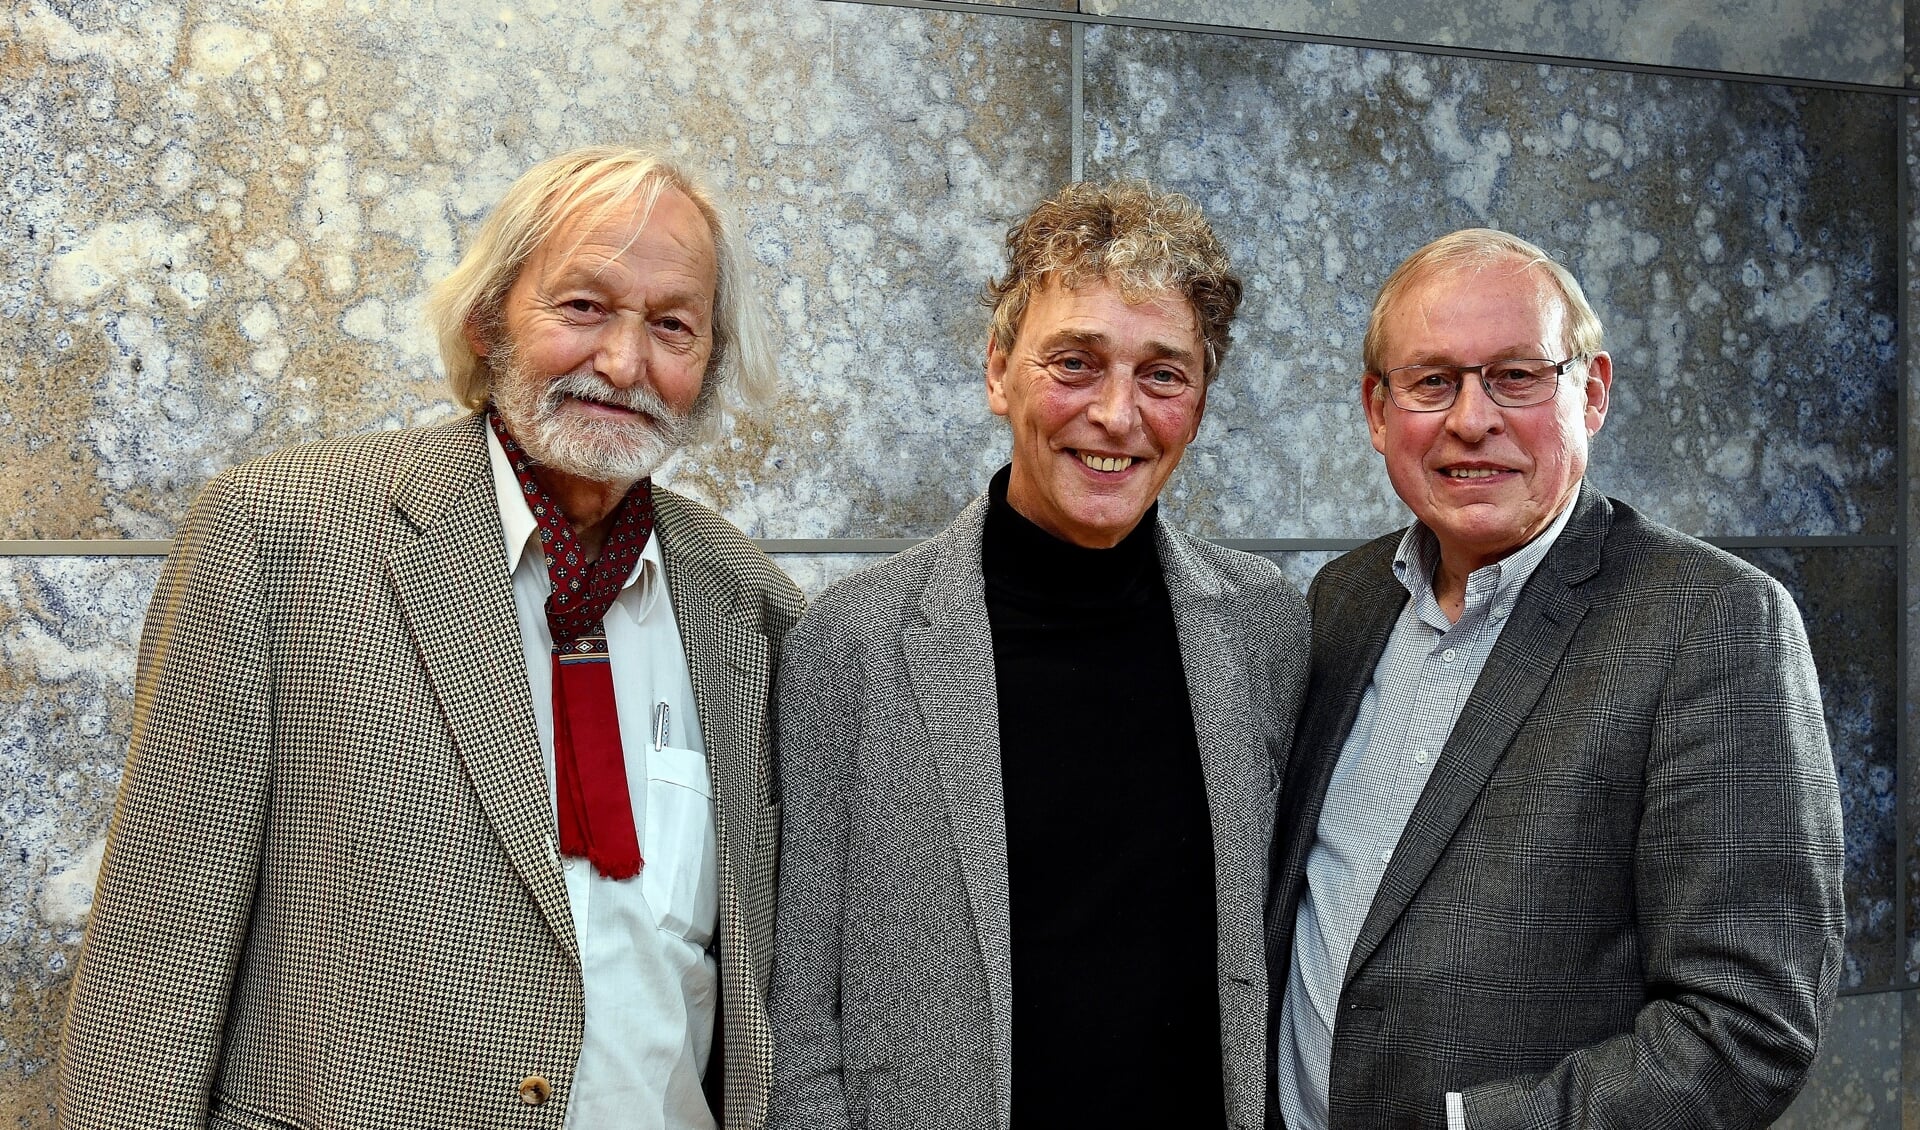 Cor Swanenberg, Riny Boeijen en Henk Janssen. (Foto: Frans van den Bogaard)